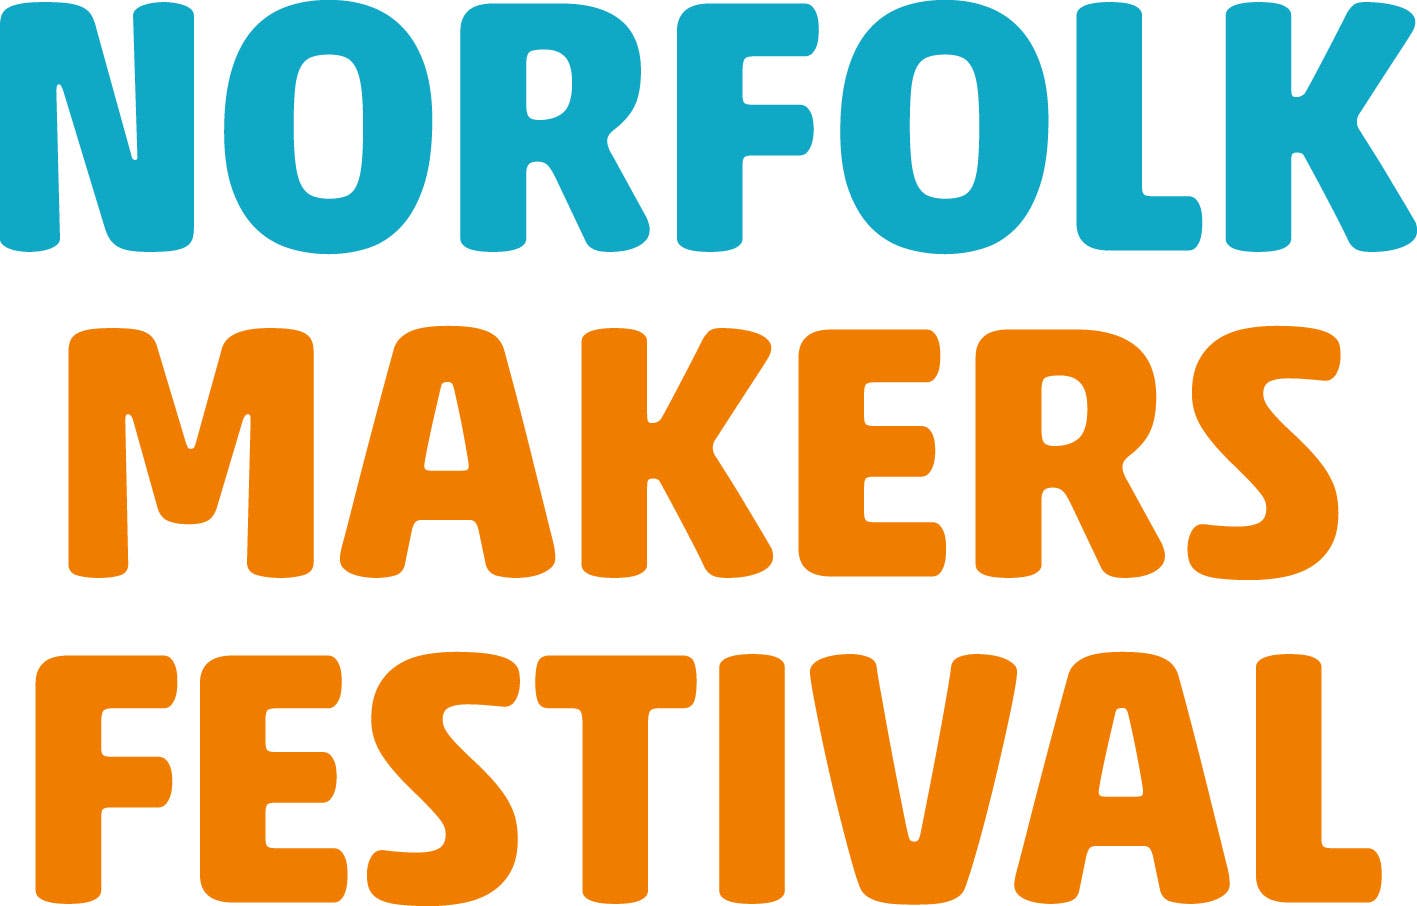 Norfolk Makers Festival